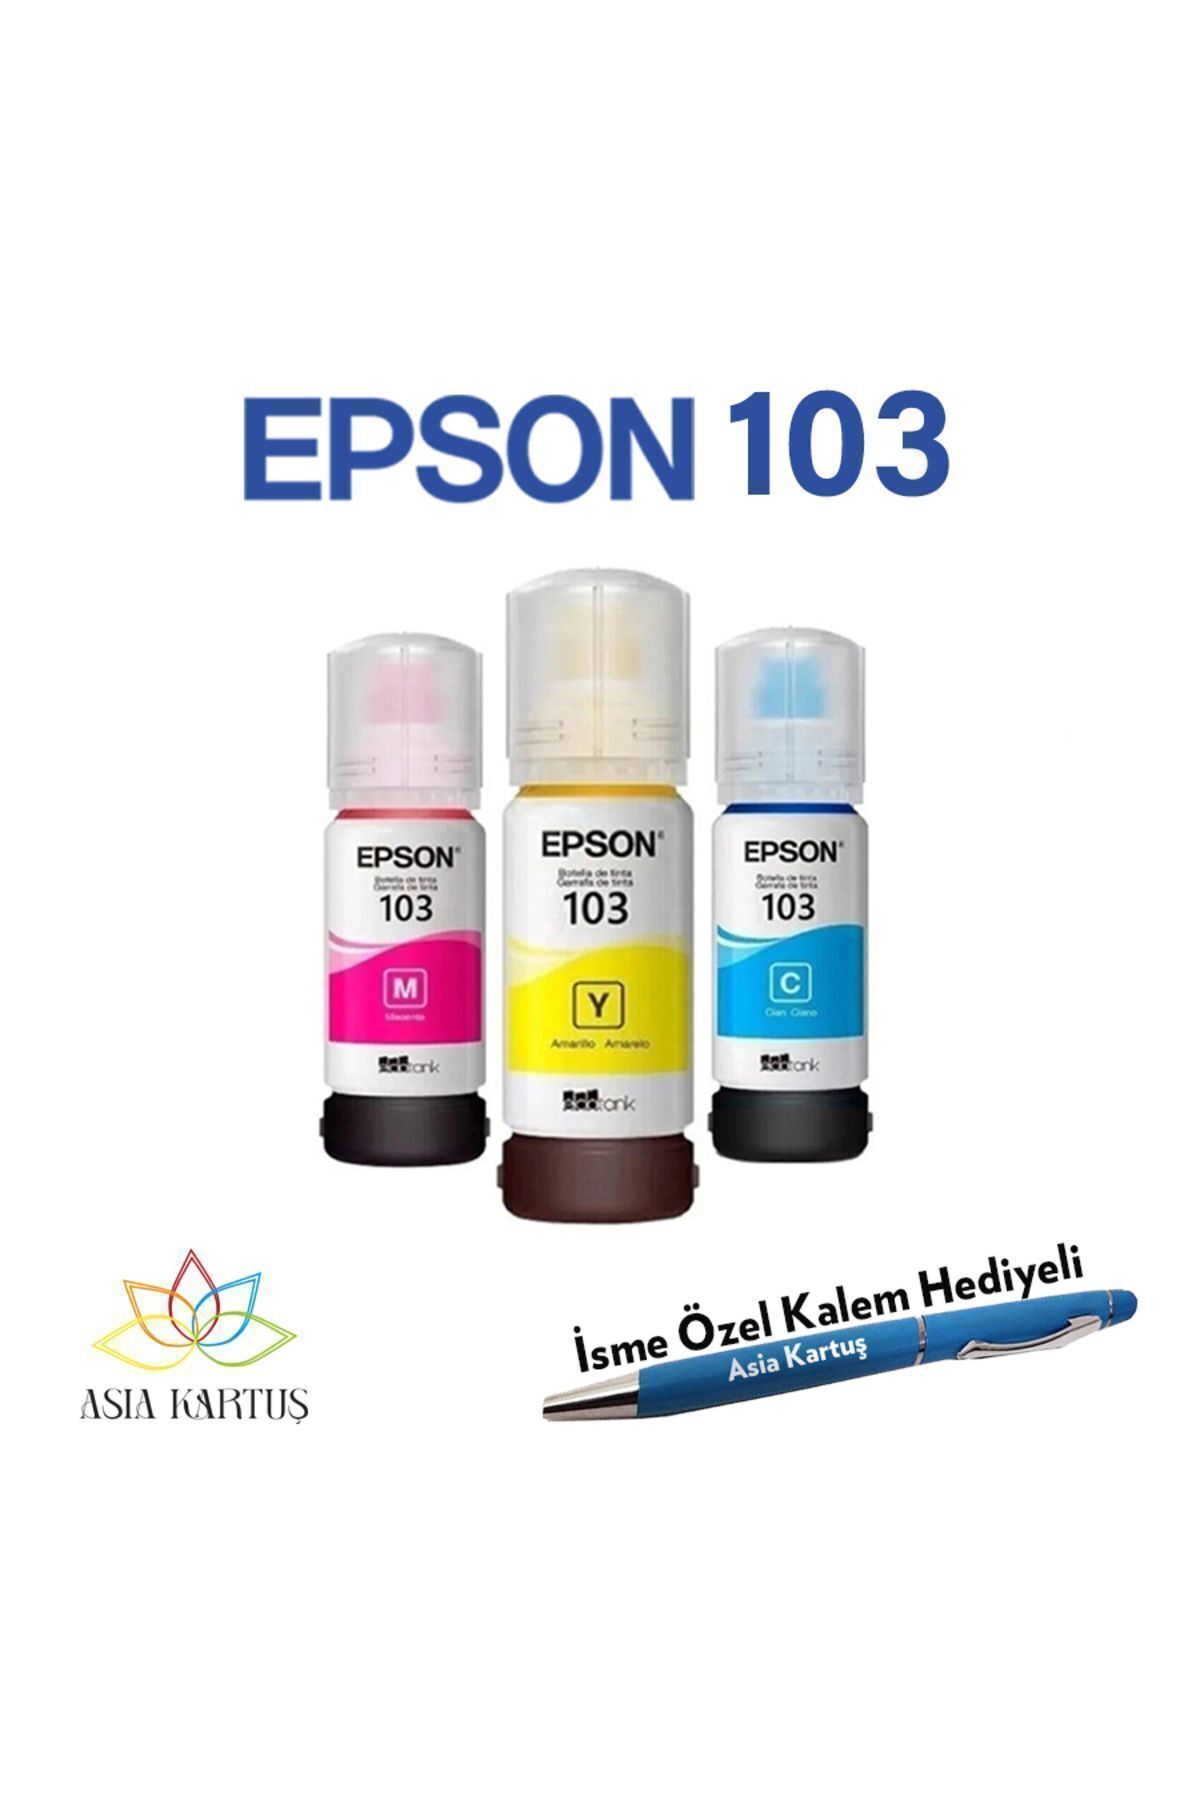 Epson EcoTank L11050 Uyumlu Kalem Hediyeli Epson 103 (CMY) 3 Renk Kartuş Mürekkep Seti